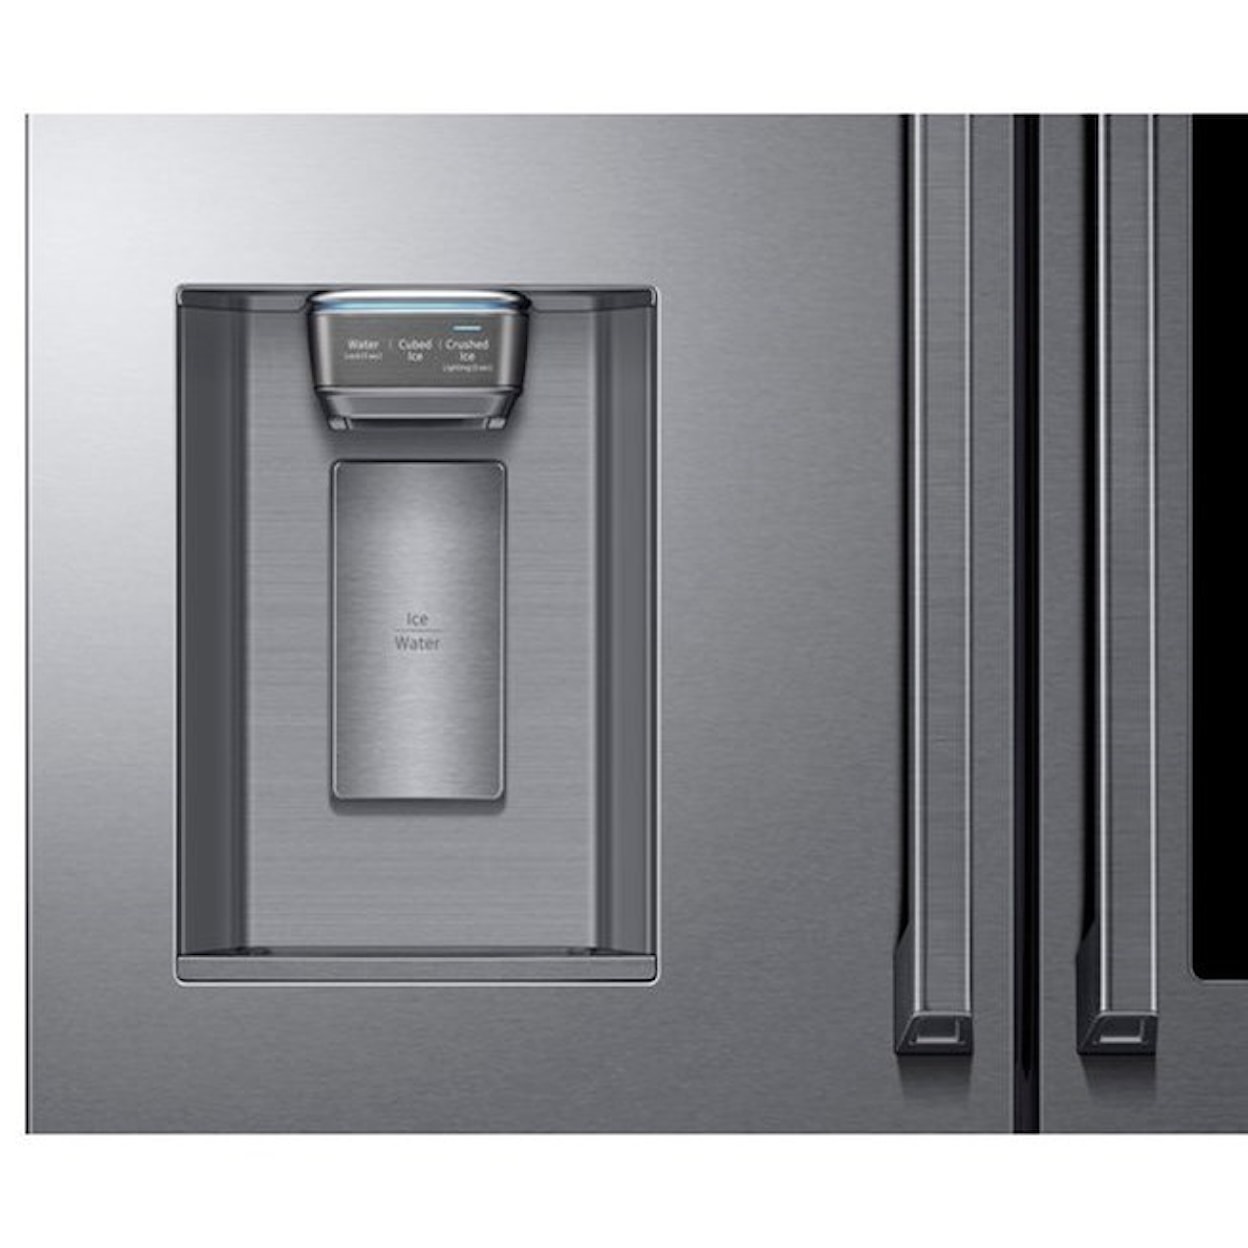 Samsung Appliances French Door Refrigerators 22 Cu.Ft. Counter Depth 4-Door French Fridge